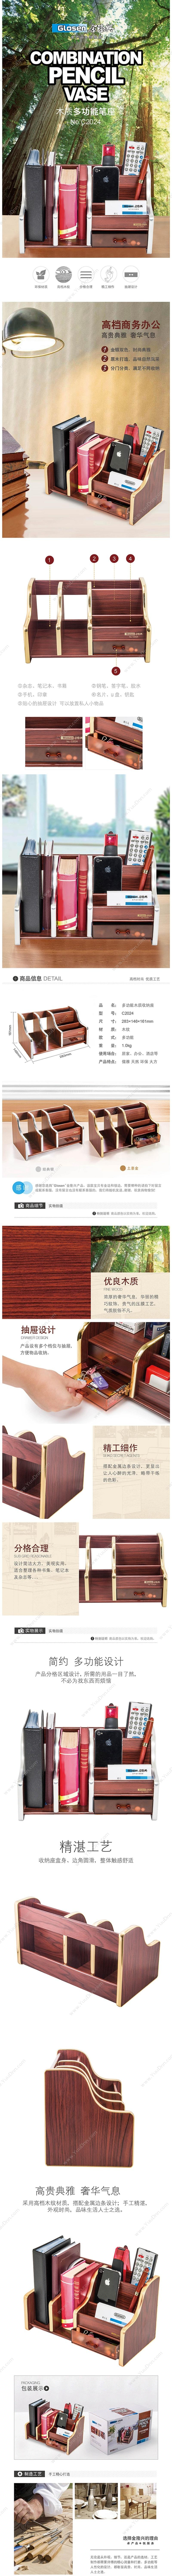 金隆兴 Jinlongxing C2024 木质多功能办公笔筒带书立 笔筒/笔袋